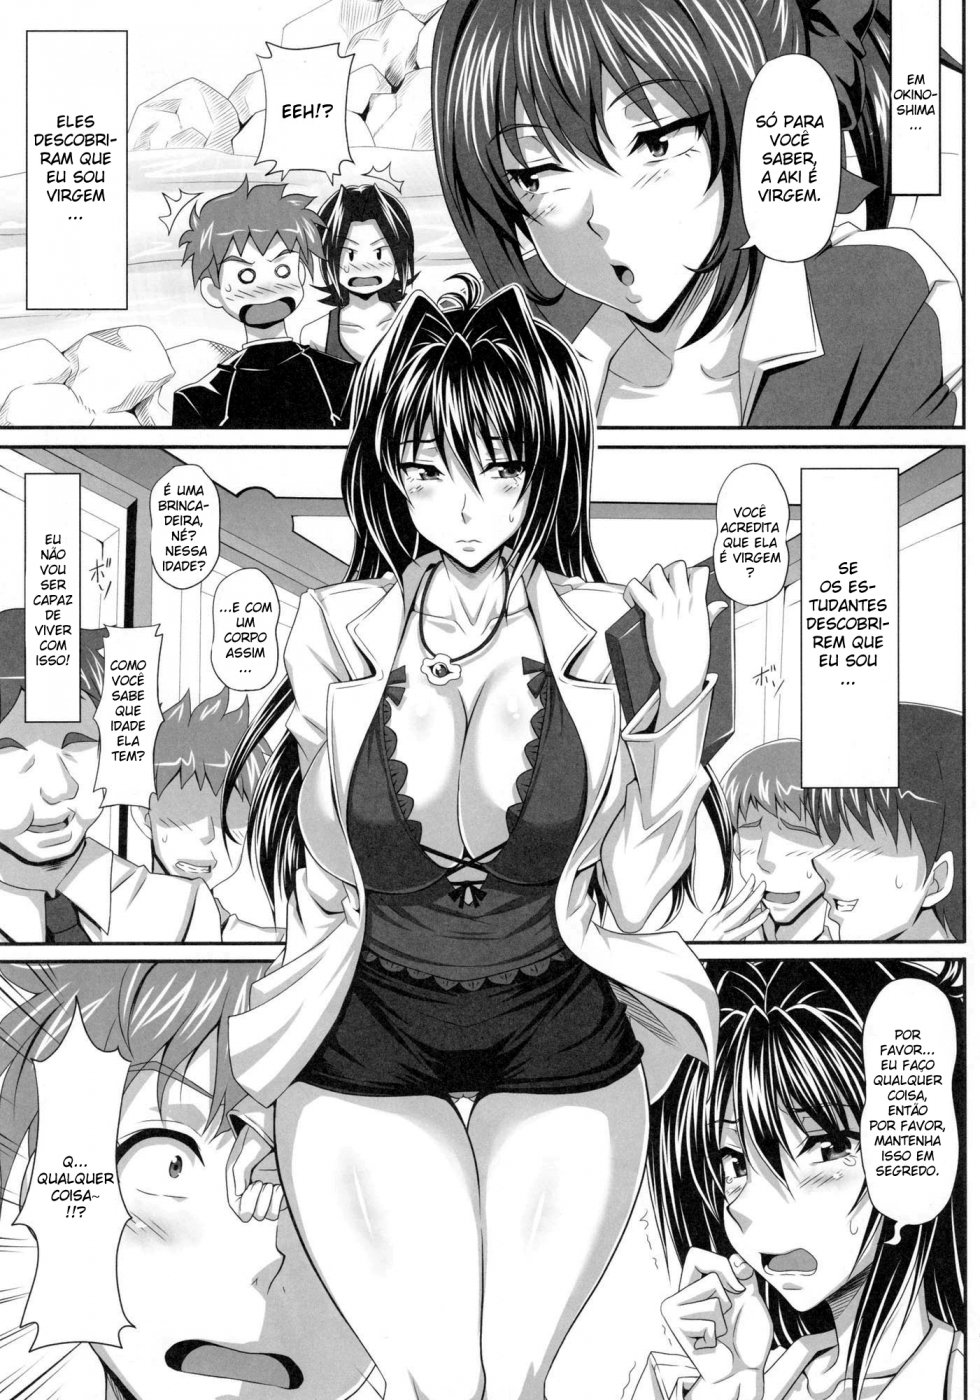 Sexo Hentai - A professora que ama rola!